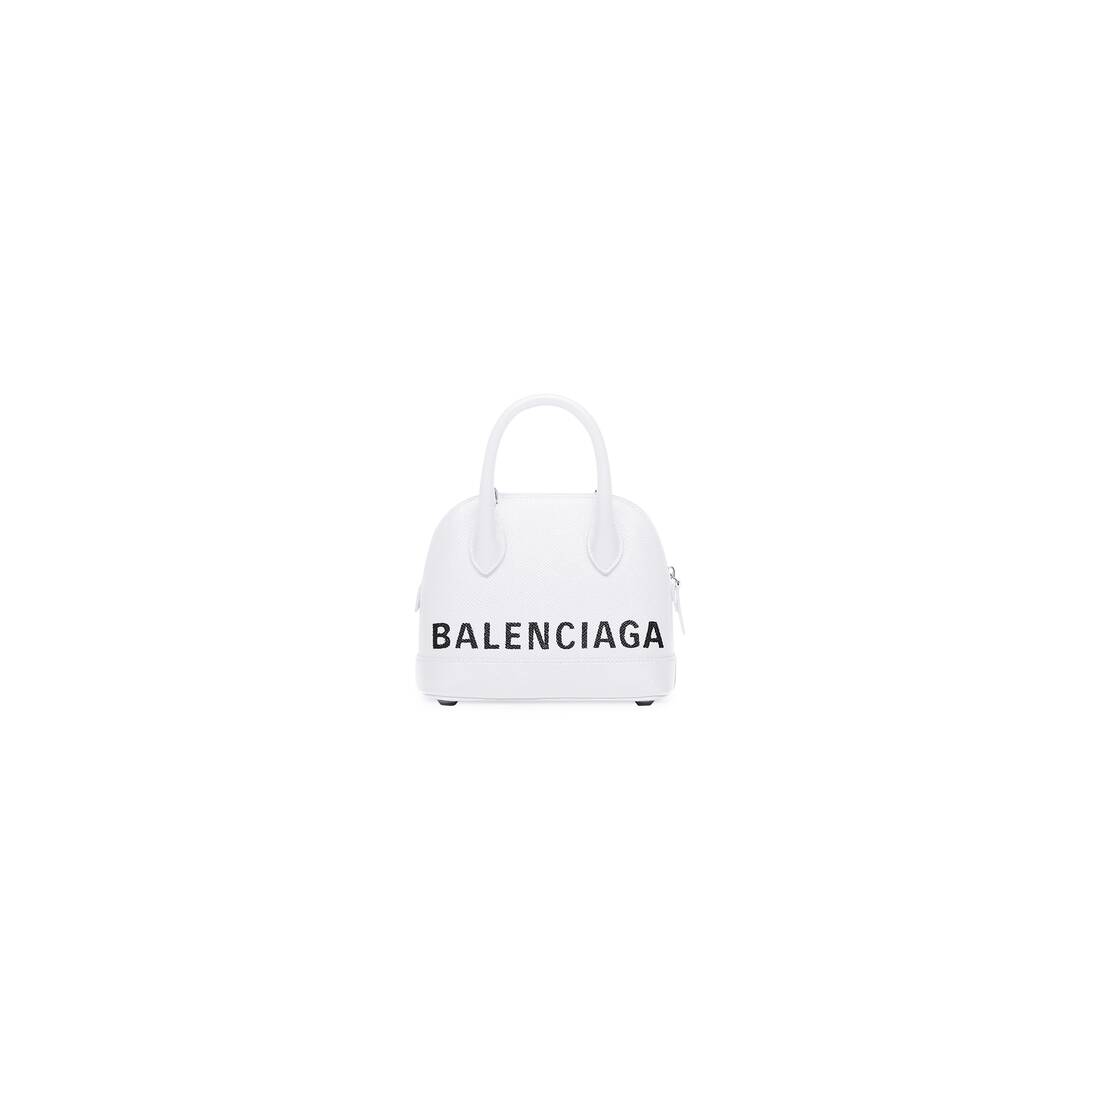 Balenciaga Ville Top Handle XXS Black/White in Calfskin Leather